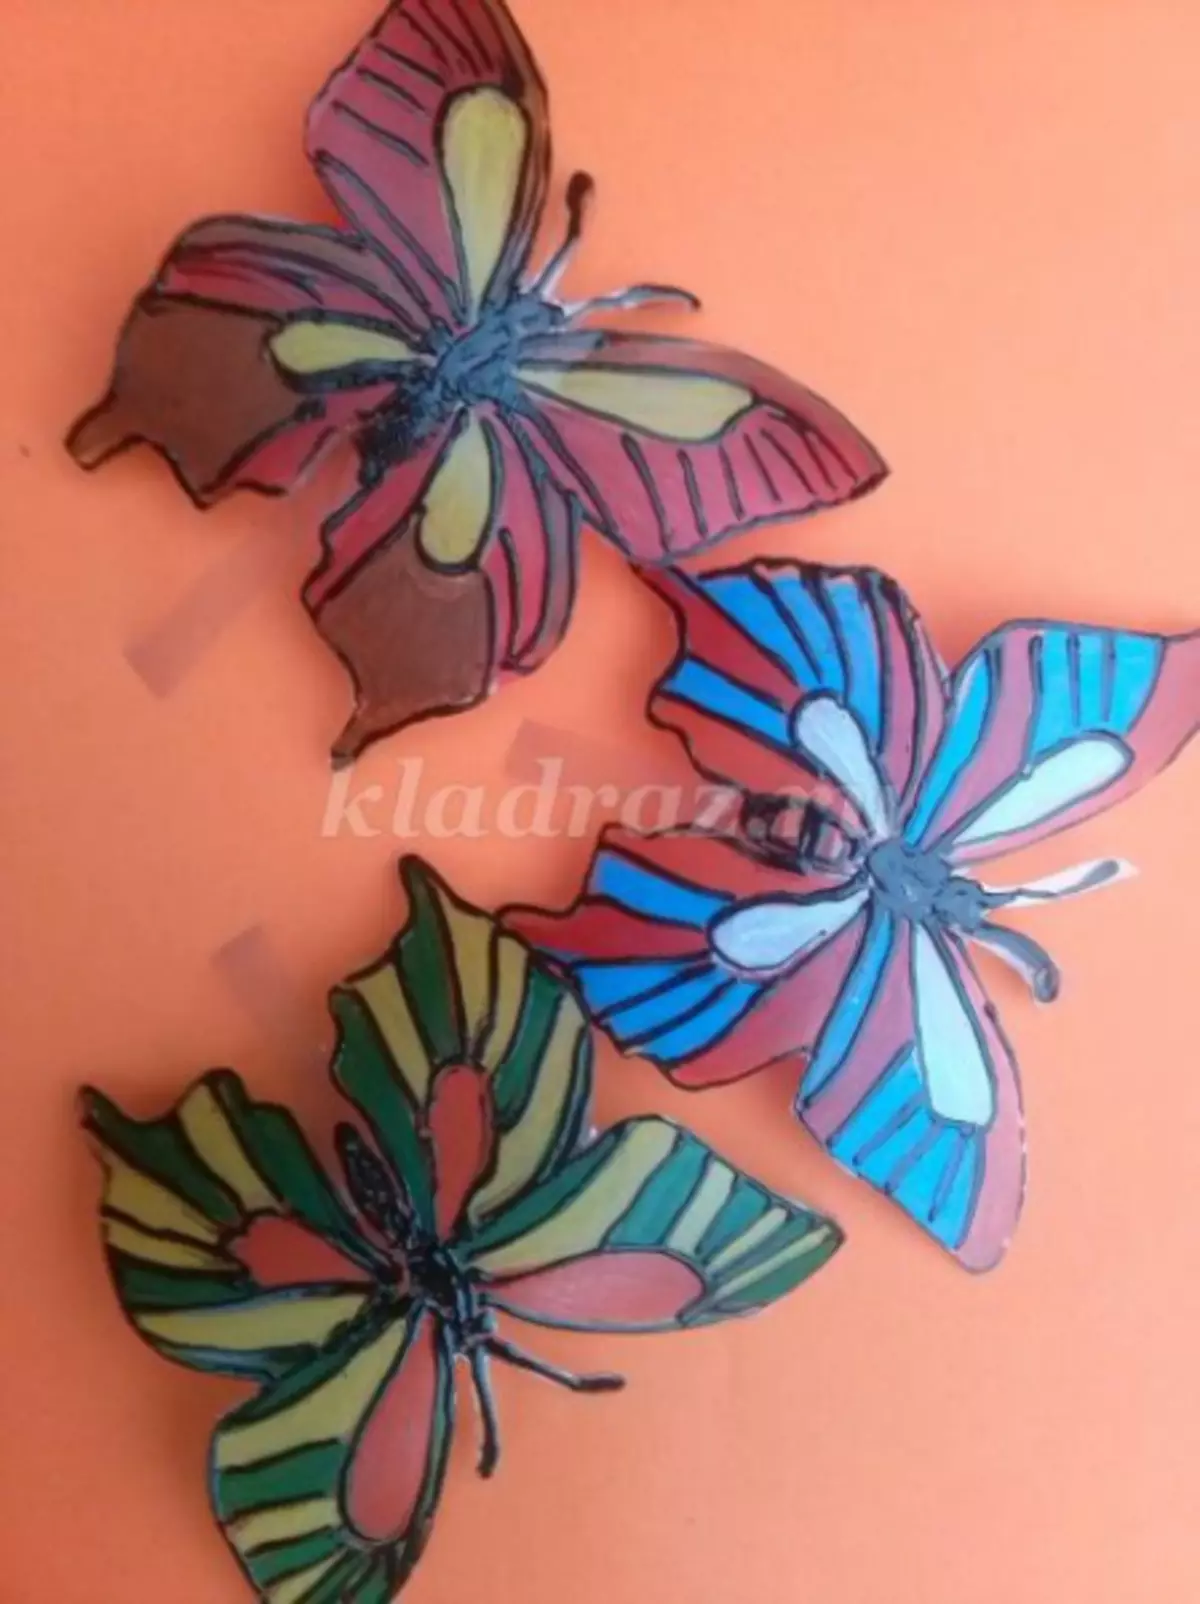 I-Master Class kuma-butterflies amabhodlela epulasitiki: amaphethini we-craft